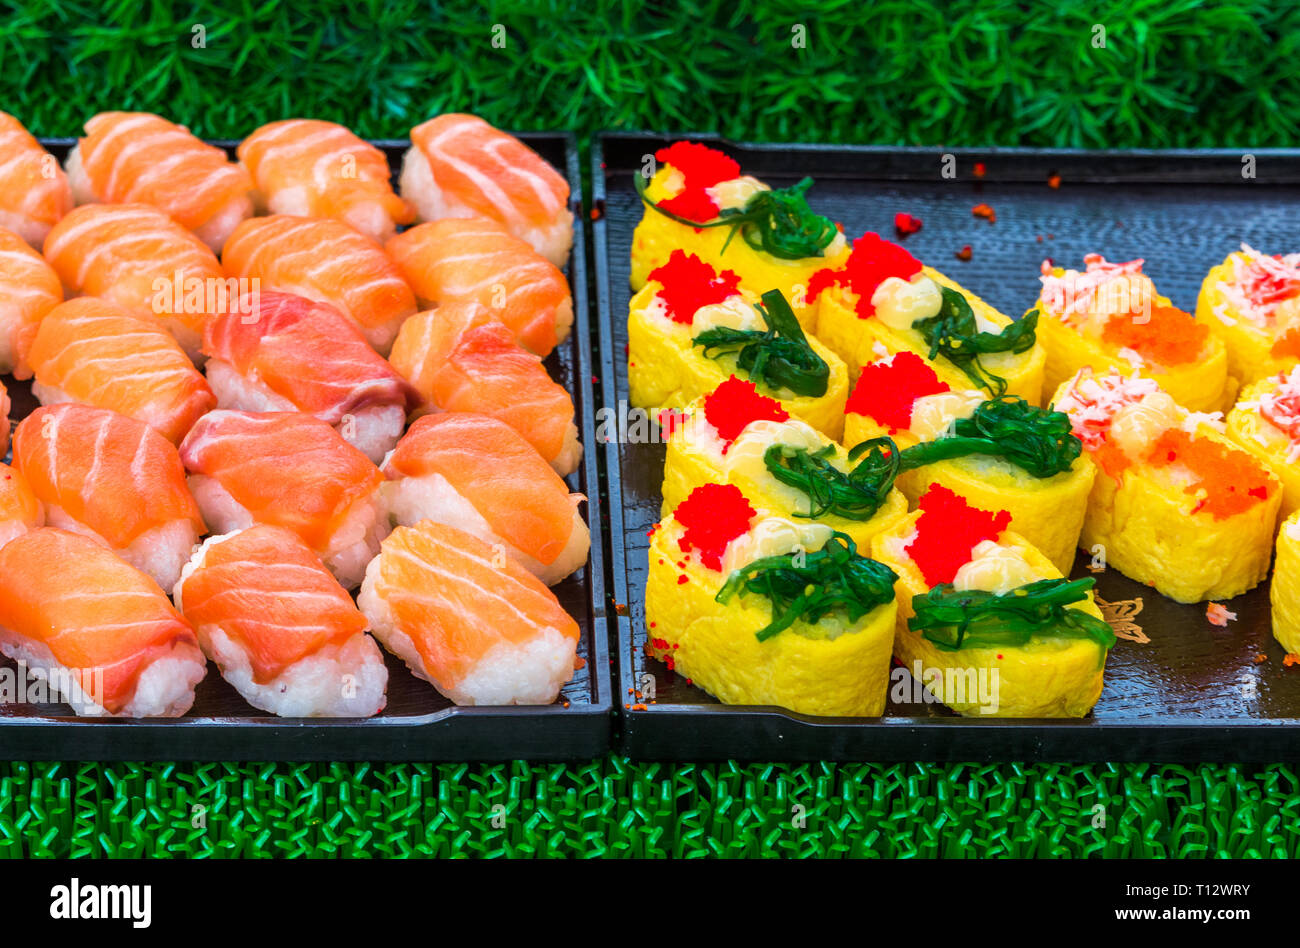 Rotoli di sushi giapponese di delicatezza. Il giapponese del cibo tradizionale a base di riso e pesce o frutti di mare. Una serie di deliziose prelibatezze in un mercato di giorno in Tailandia, Foto Stock